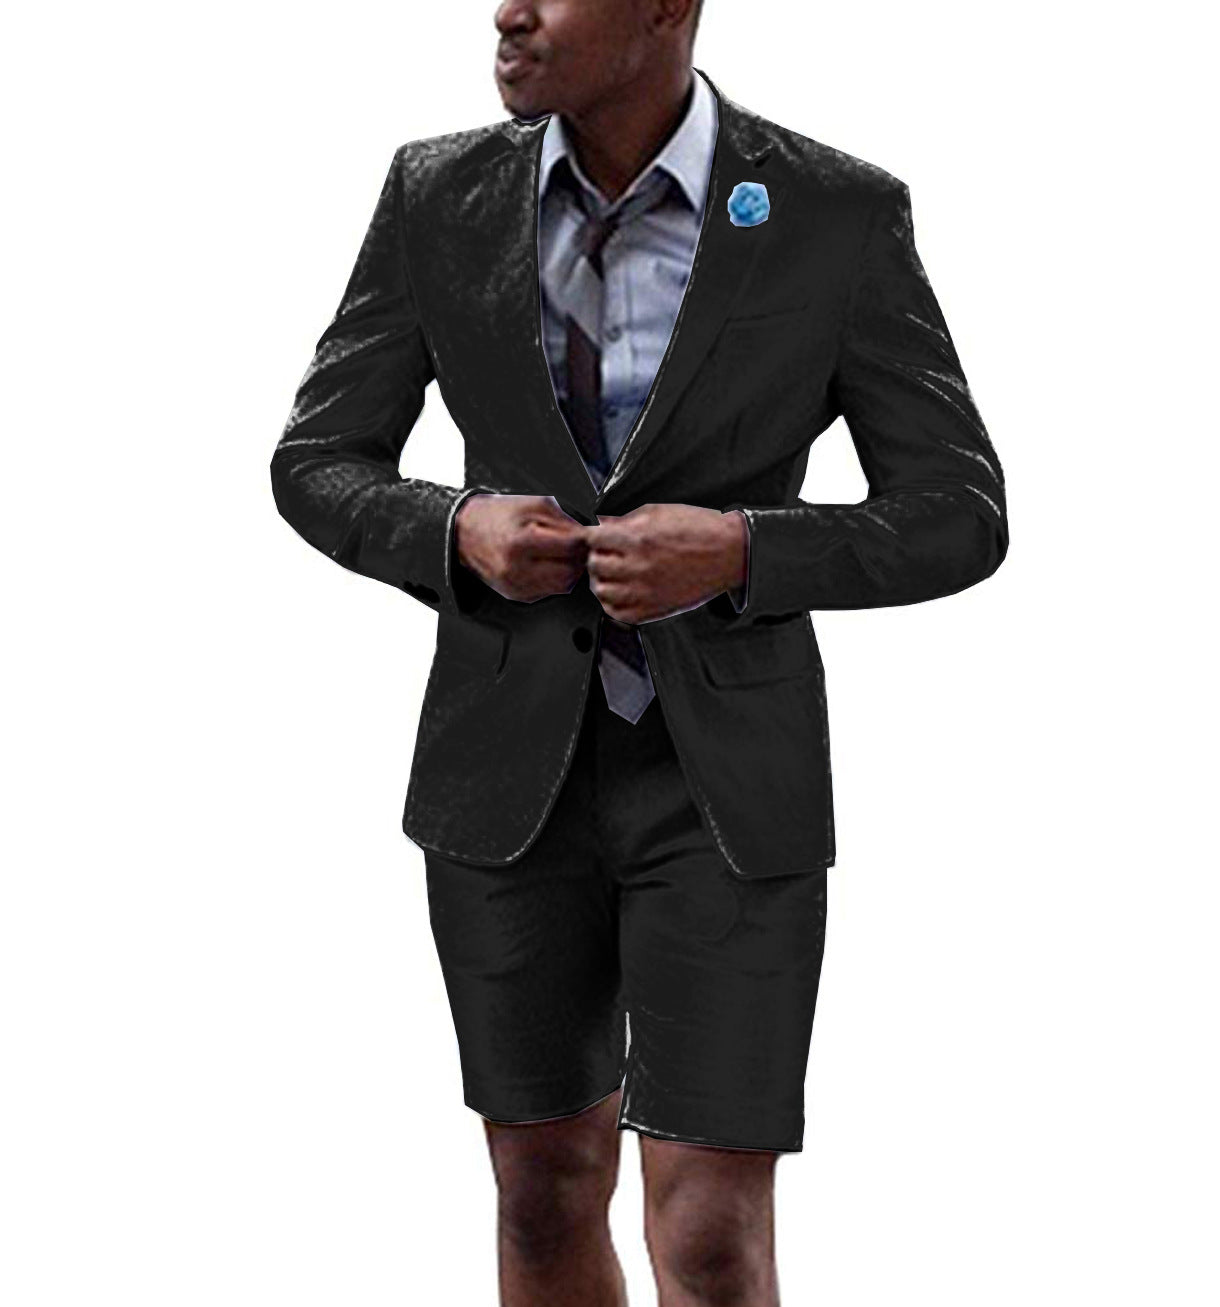 2-Piece Fashion Shorts & Jacket Suit For Men